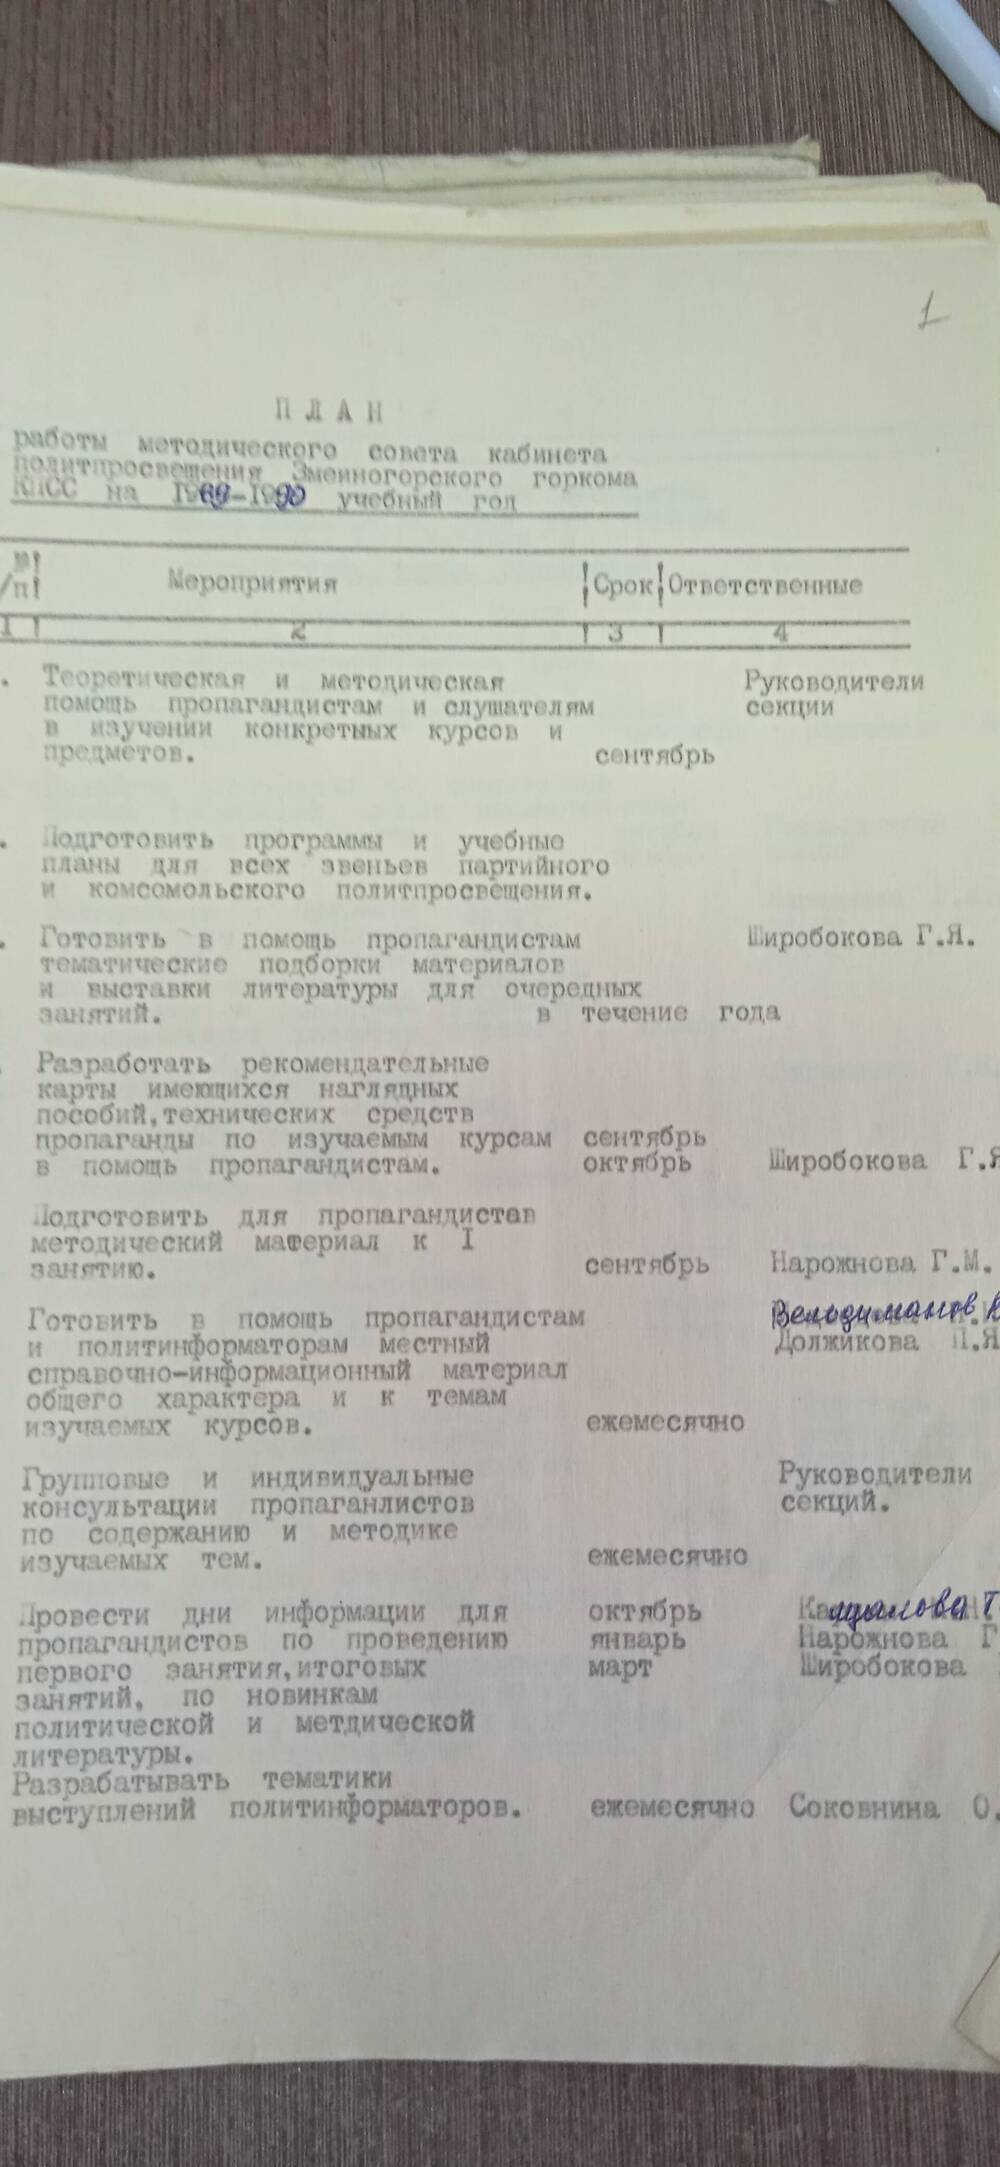 План работы методического совета кабинета политпросвещения Змеиногорского горкома КПСС на 1989-1990 учебный год.